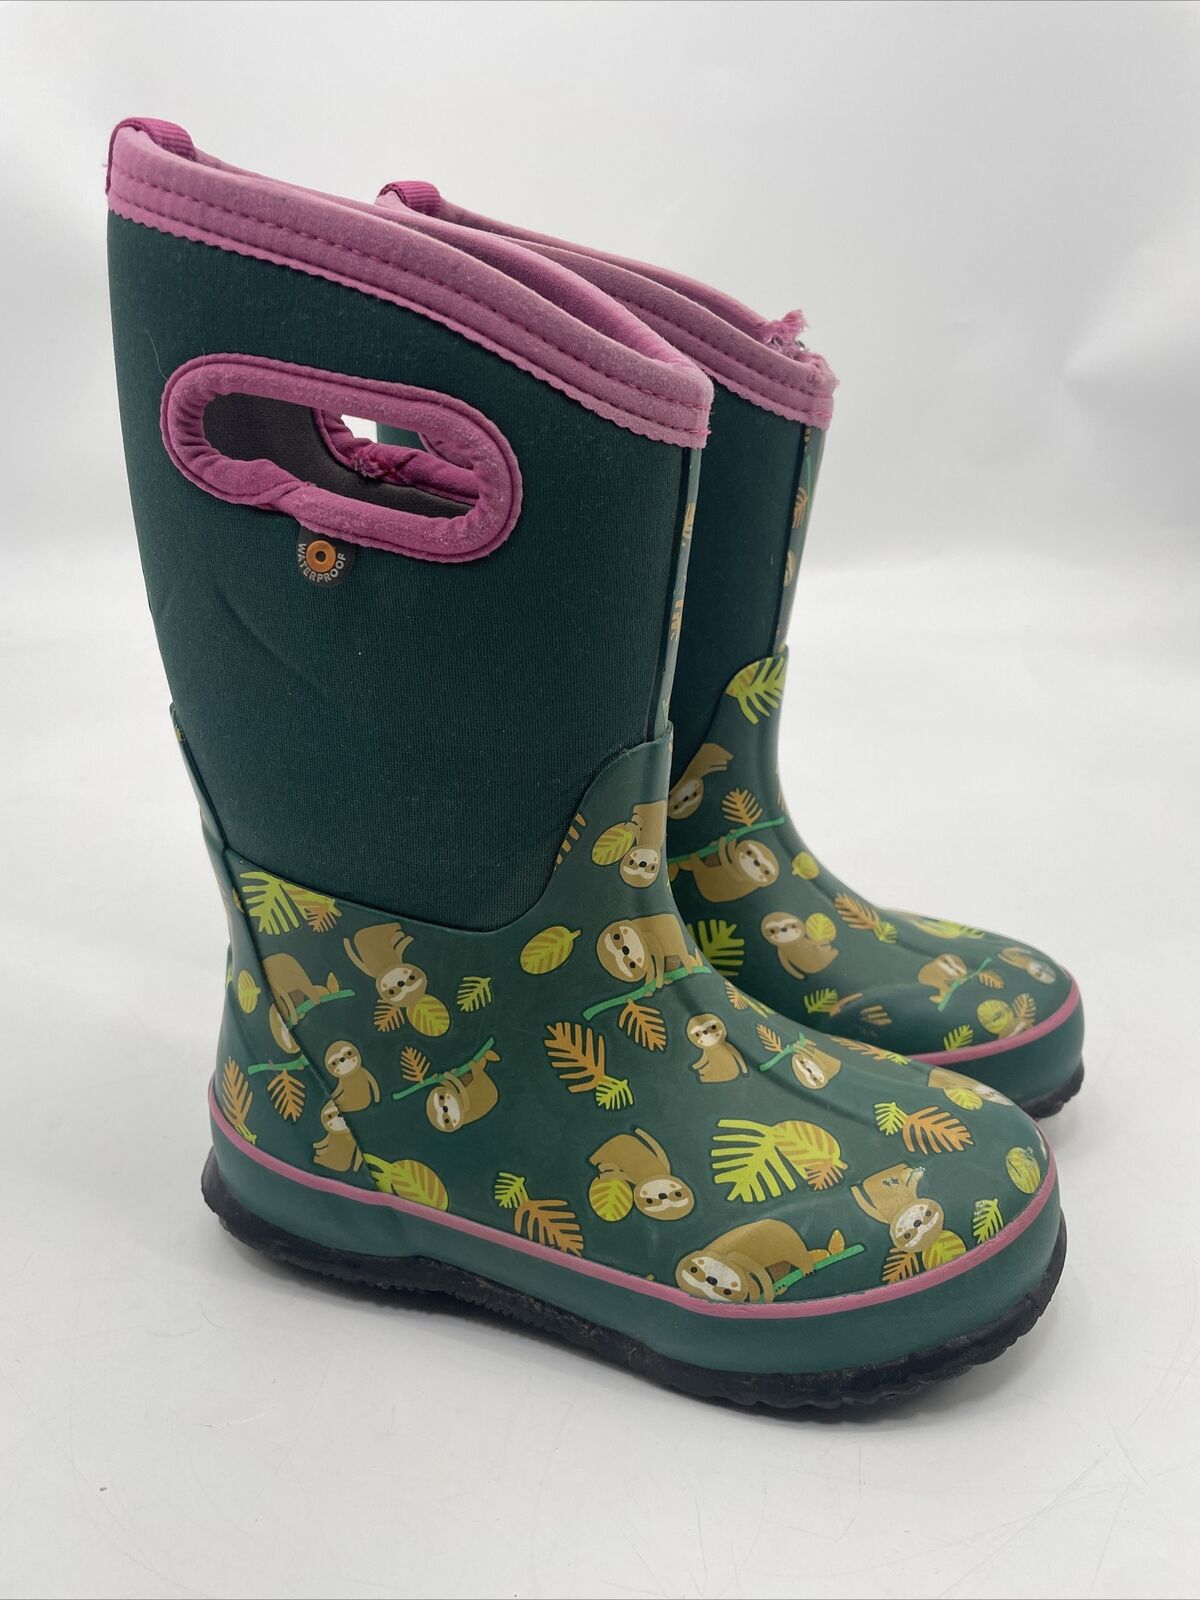 Bogs Little Kids Sz 13 Classic Green pink Sloth Waterproof Winter Boots